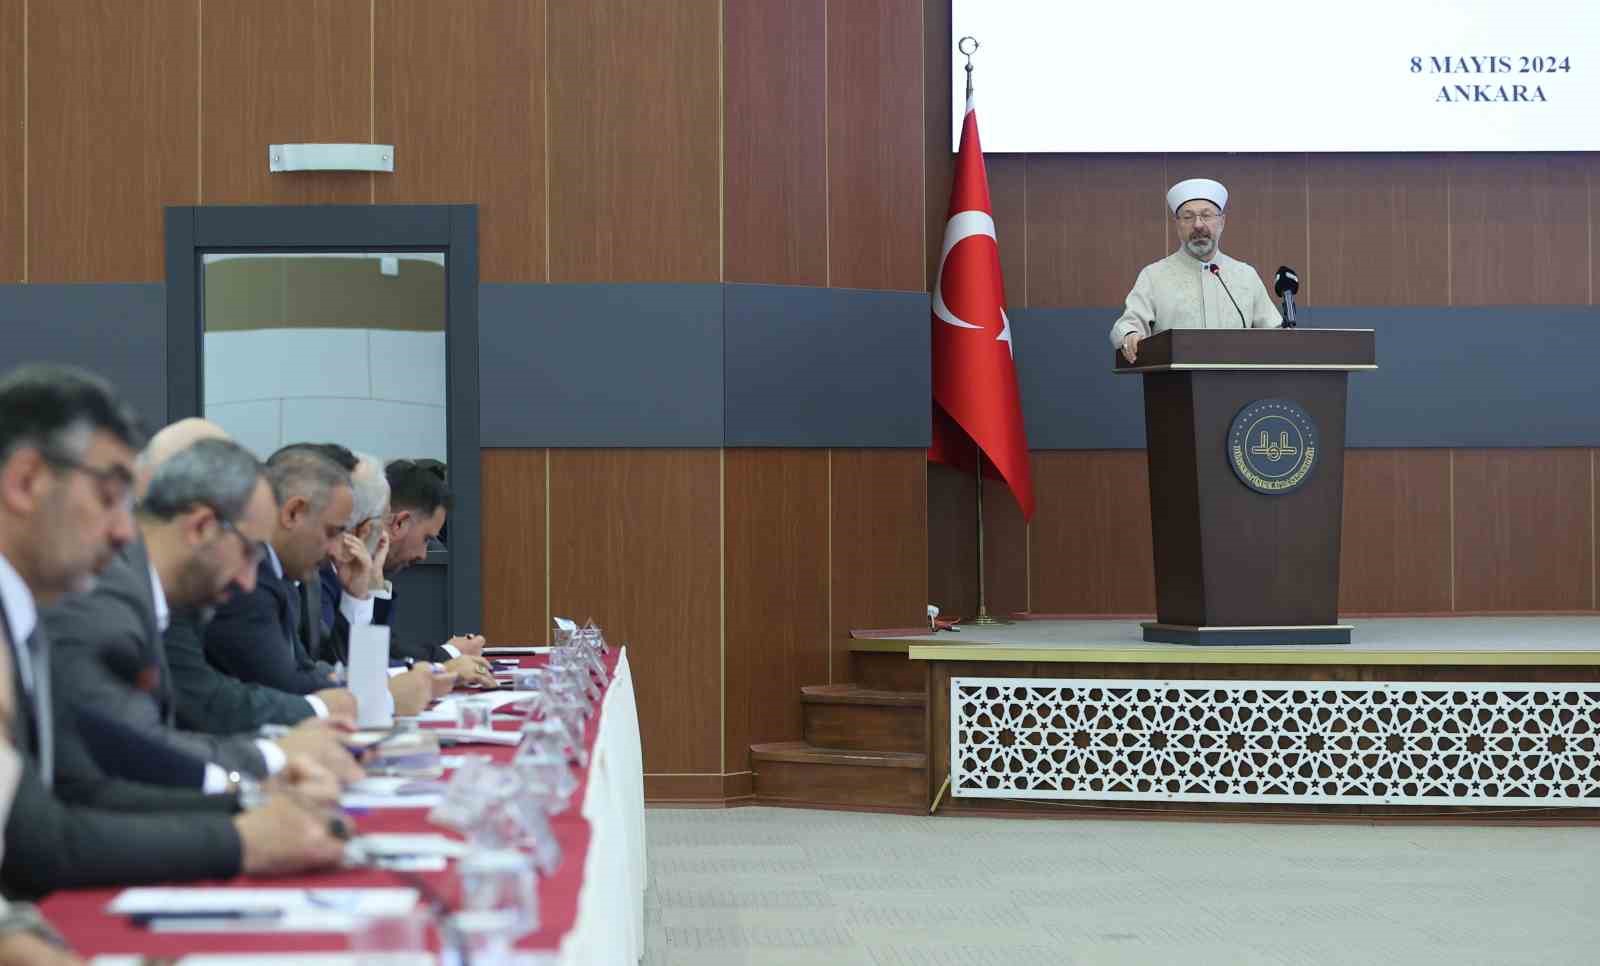 Diyanet İşleri Başkanı Erbaş: "İslam’ın rahmet mesajlarıyla insanları buluşturmanın heyecanı içerisinde olmalıyız"
